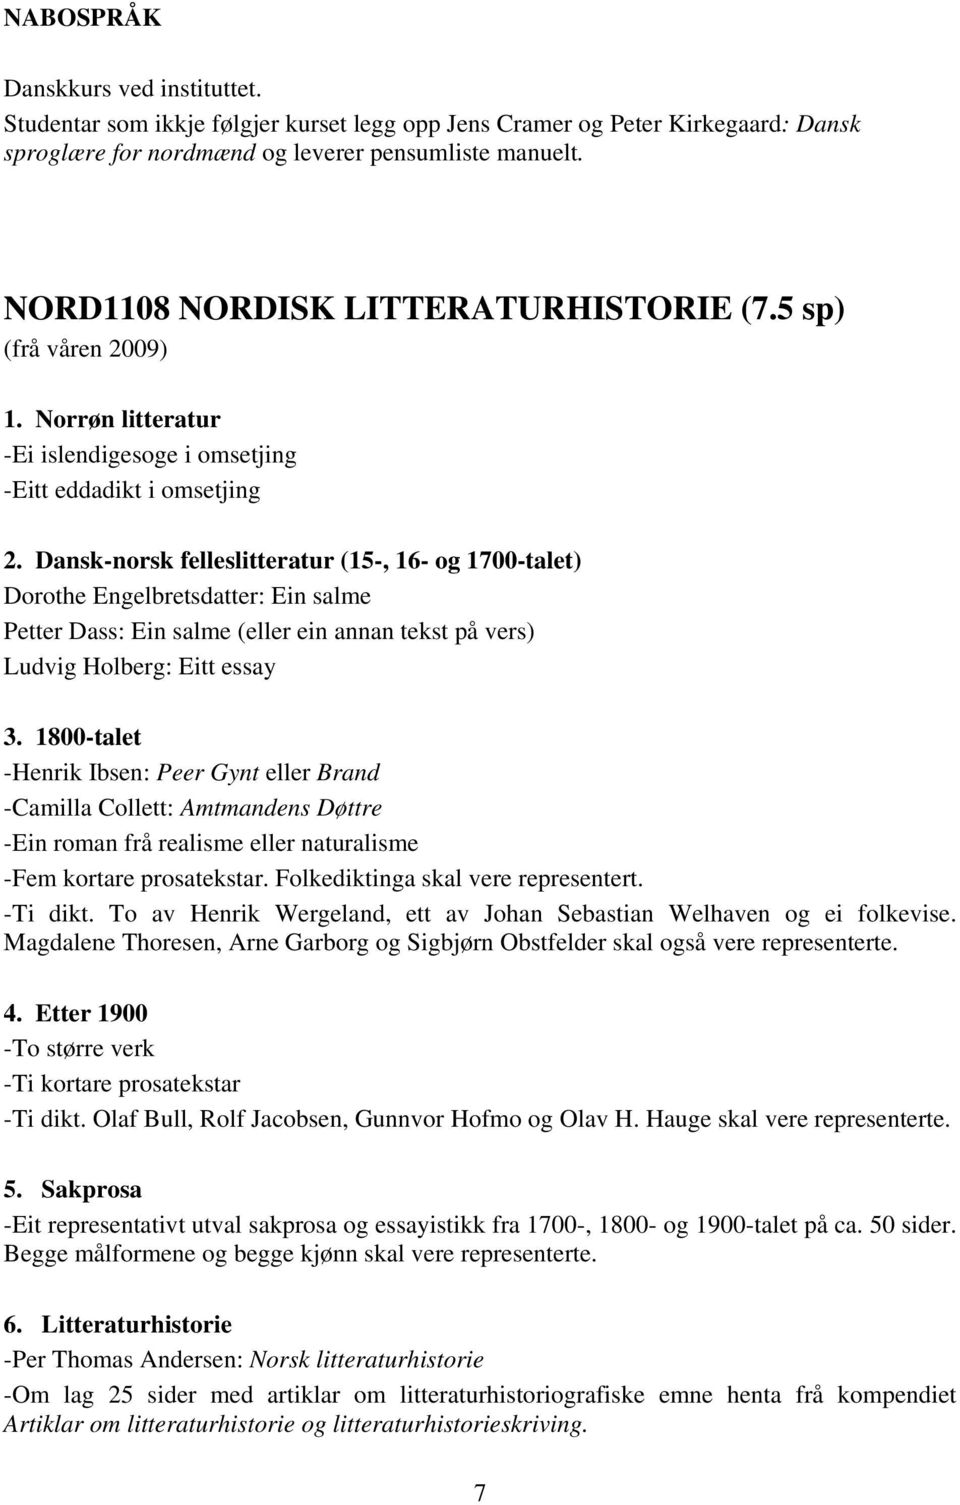 Dansk-norsk felleslitteratur (15-, 16- og 1700-talet) Dorothe Engelbretsdatter: Ein salme Petter Dass: Ein salme (eller ein annan tekst på vers) Ludvig Holberg: Eitt essay 3.